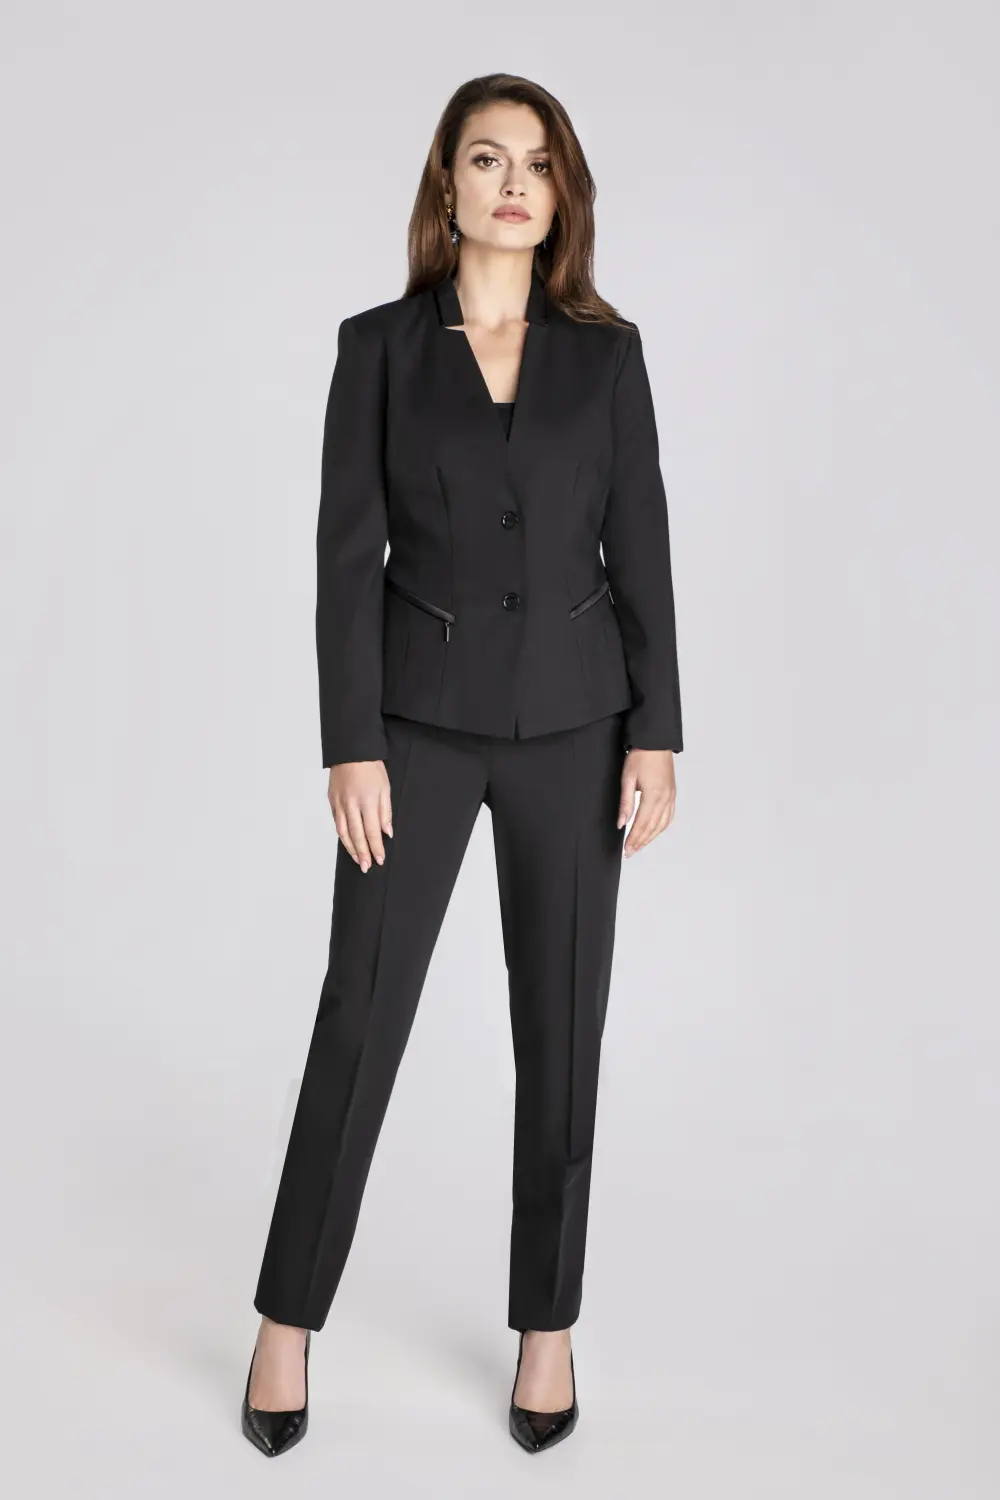 Czarny garnitur damski. żakiet damski ze stójką i suwakami oraz szerokie spodnie damskie w kant marki Vito Vergelis